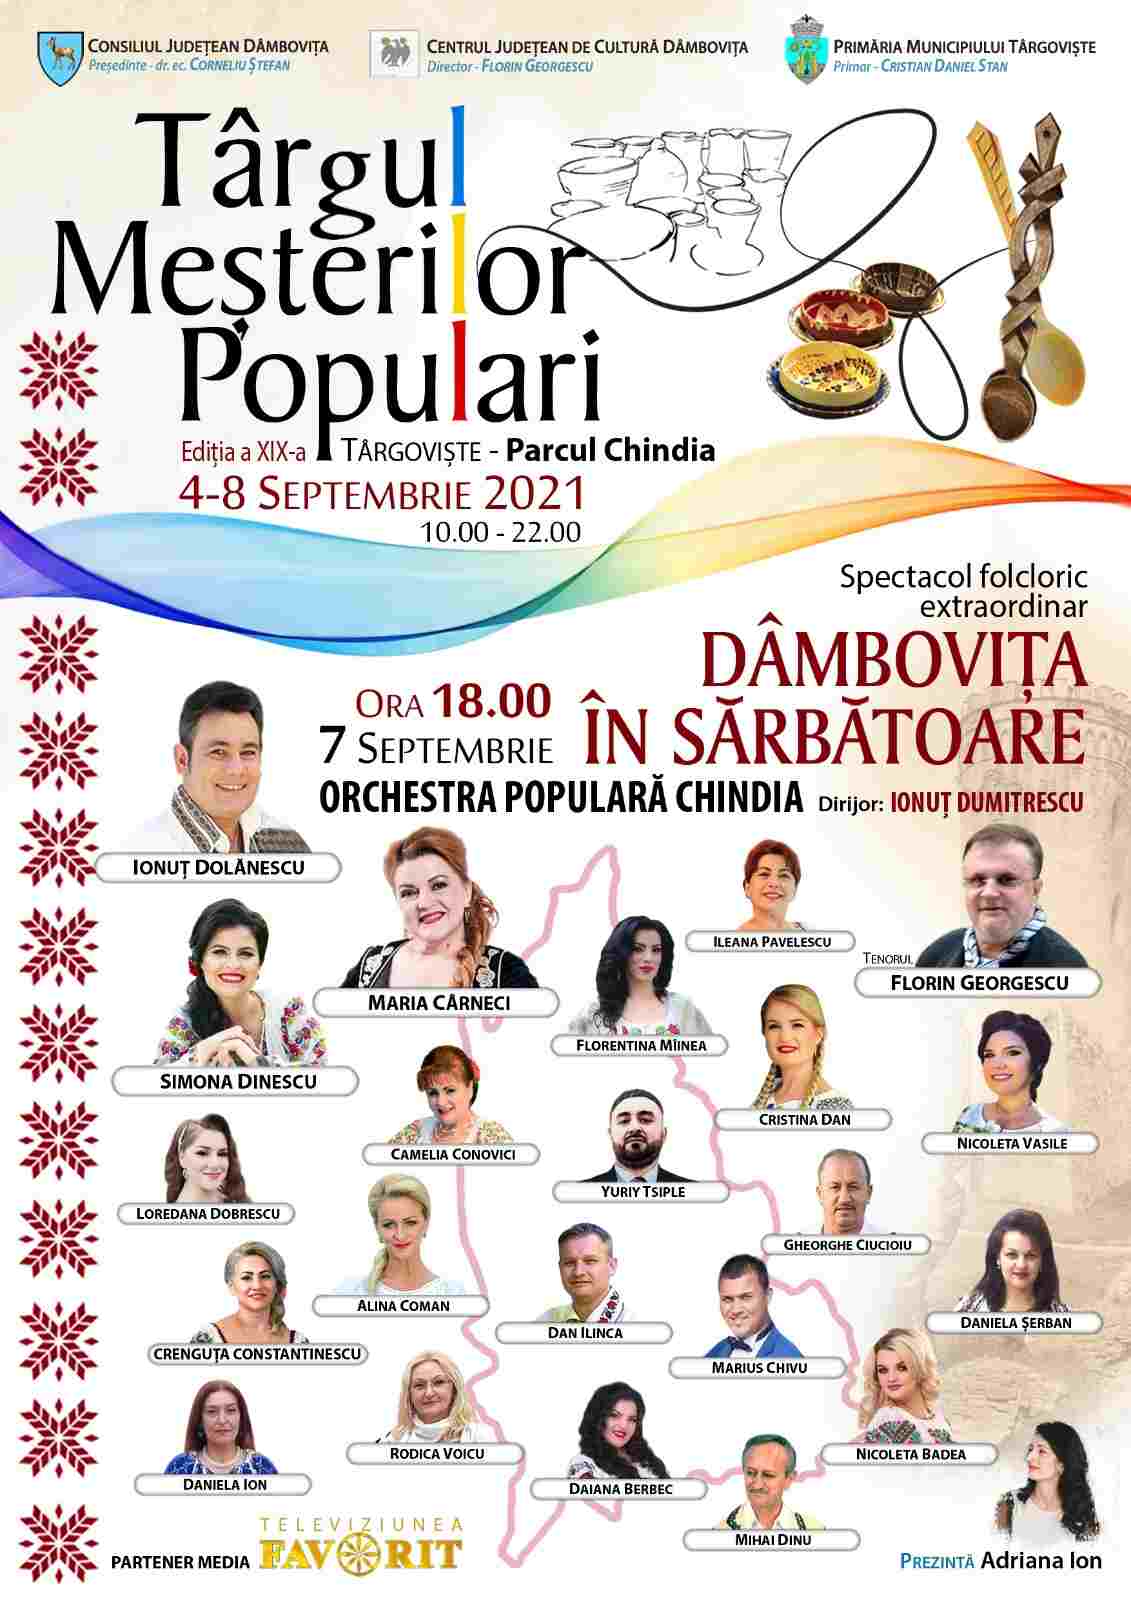  Consiliul Județean Dâmbovița în parteneriat cu Primăria Municipiului Târgoviște, organizează manifestări artistice și culturale, cu ocazia Zilelor Cetății Târgoviște